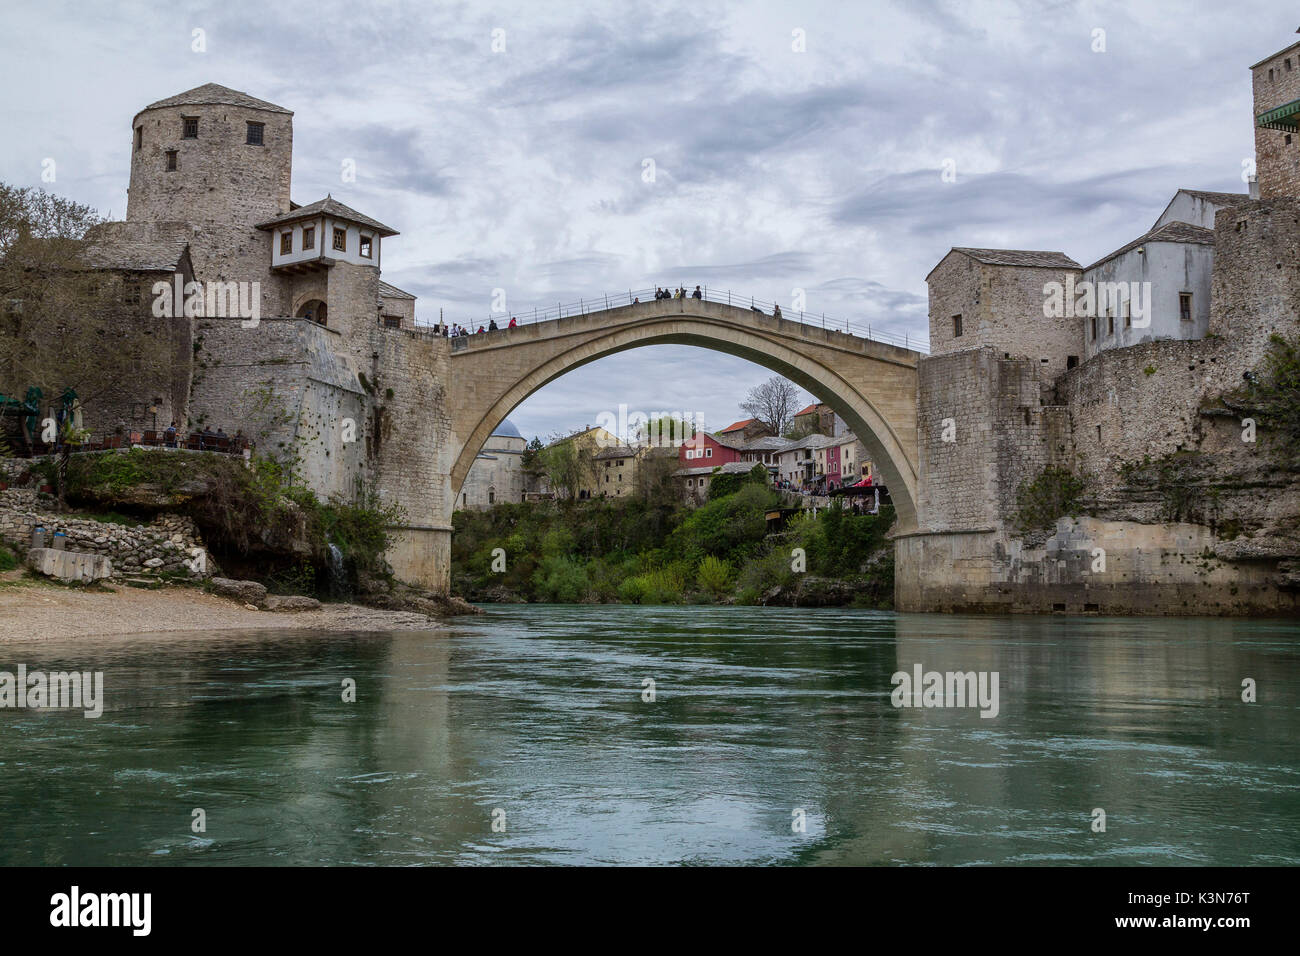 Europa orientale, Mostar, in Bosnia ed Erzegovina. Il Stari Most (Ponte Vecchio), icona della guerra nei Balcani Foto Stock